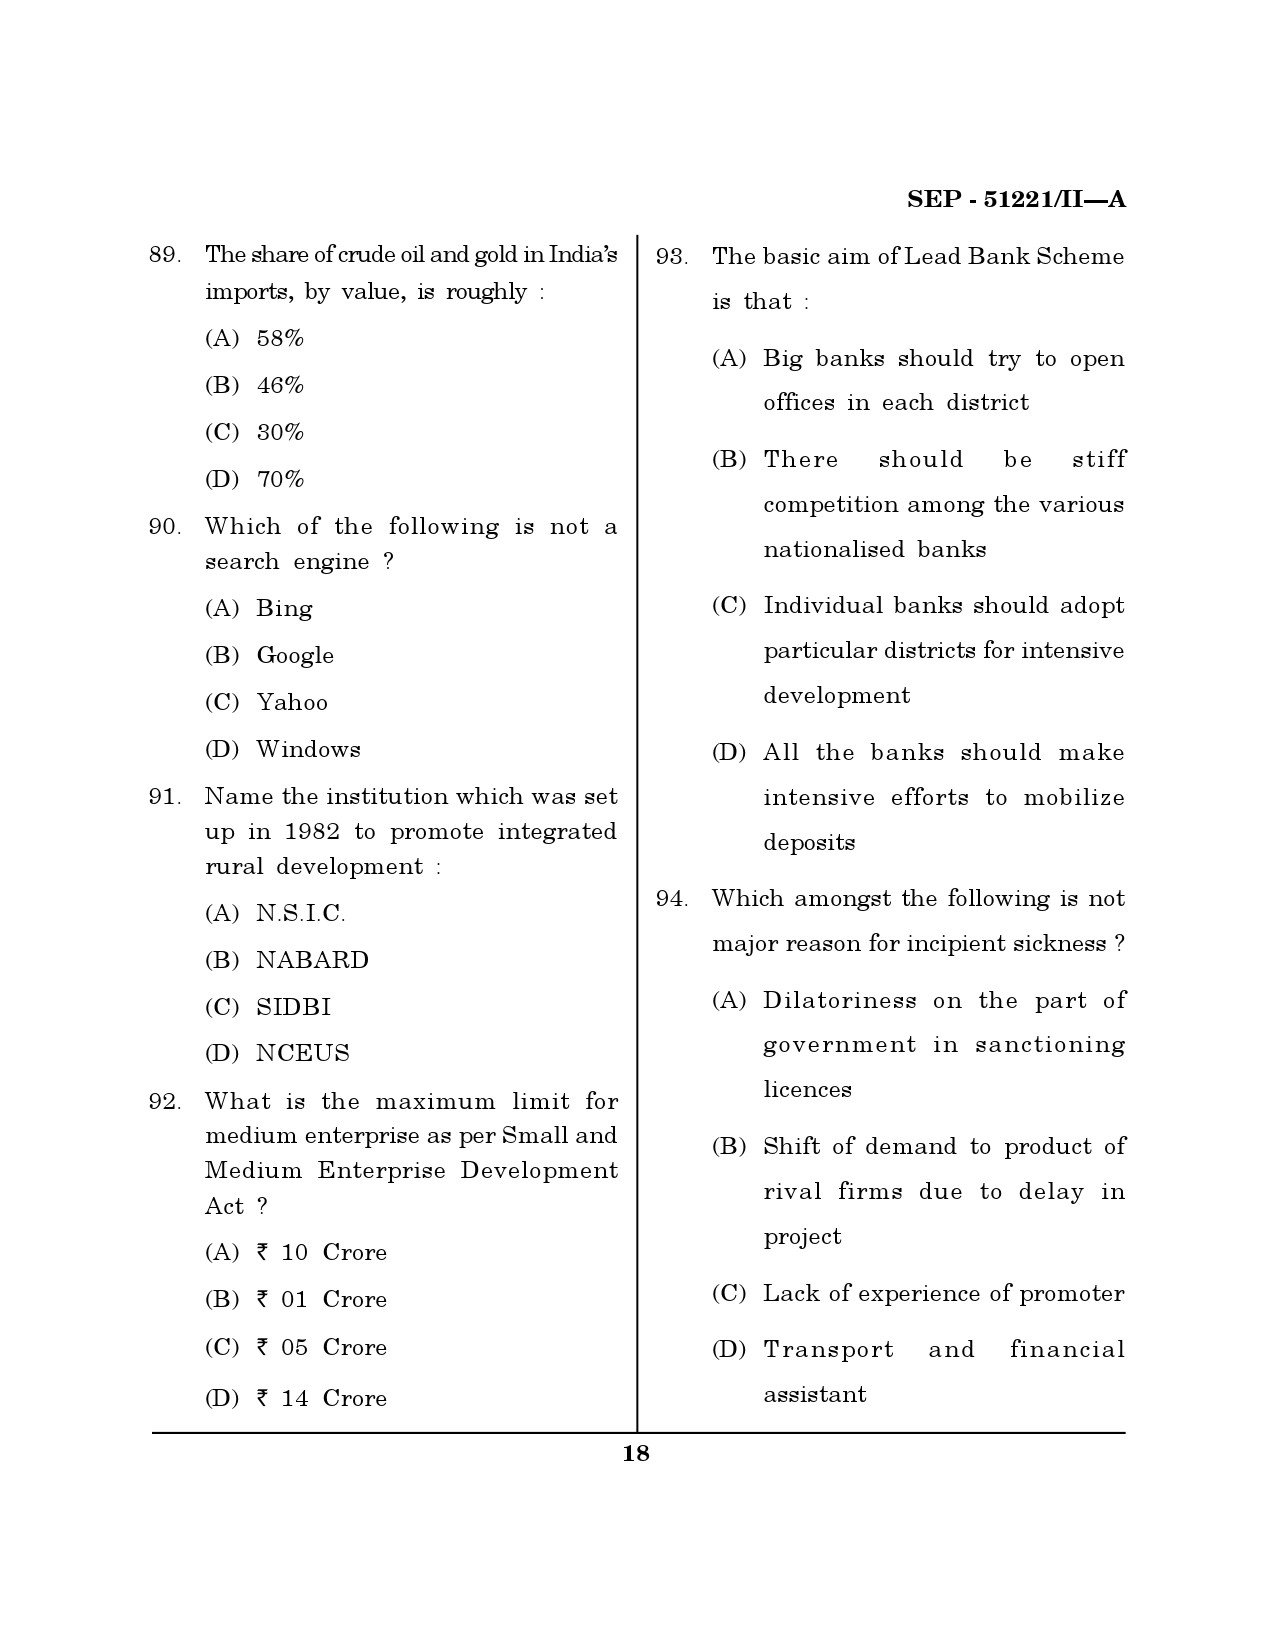 Maharashtra SET Management Exam Question Paper September 2021 17